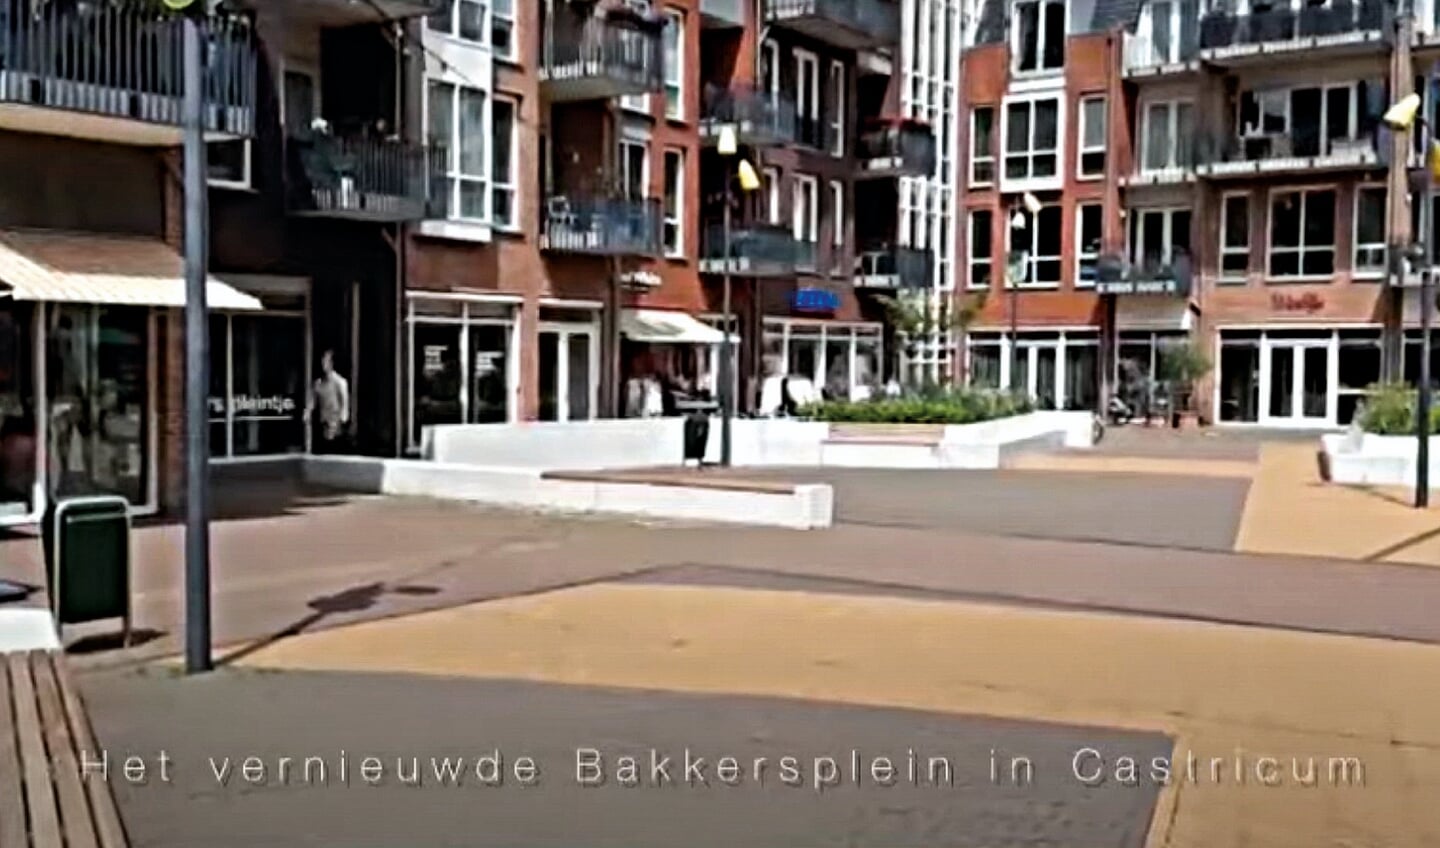 Het vernieuwde Bakersplein in Castricum.